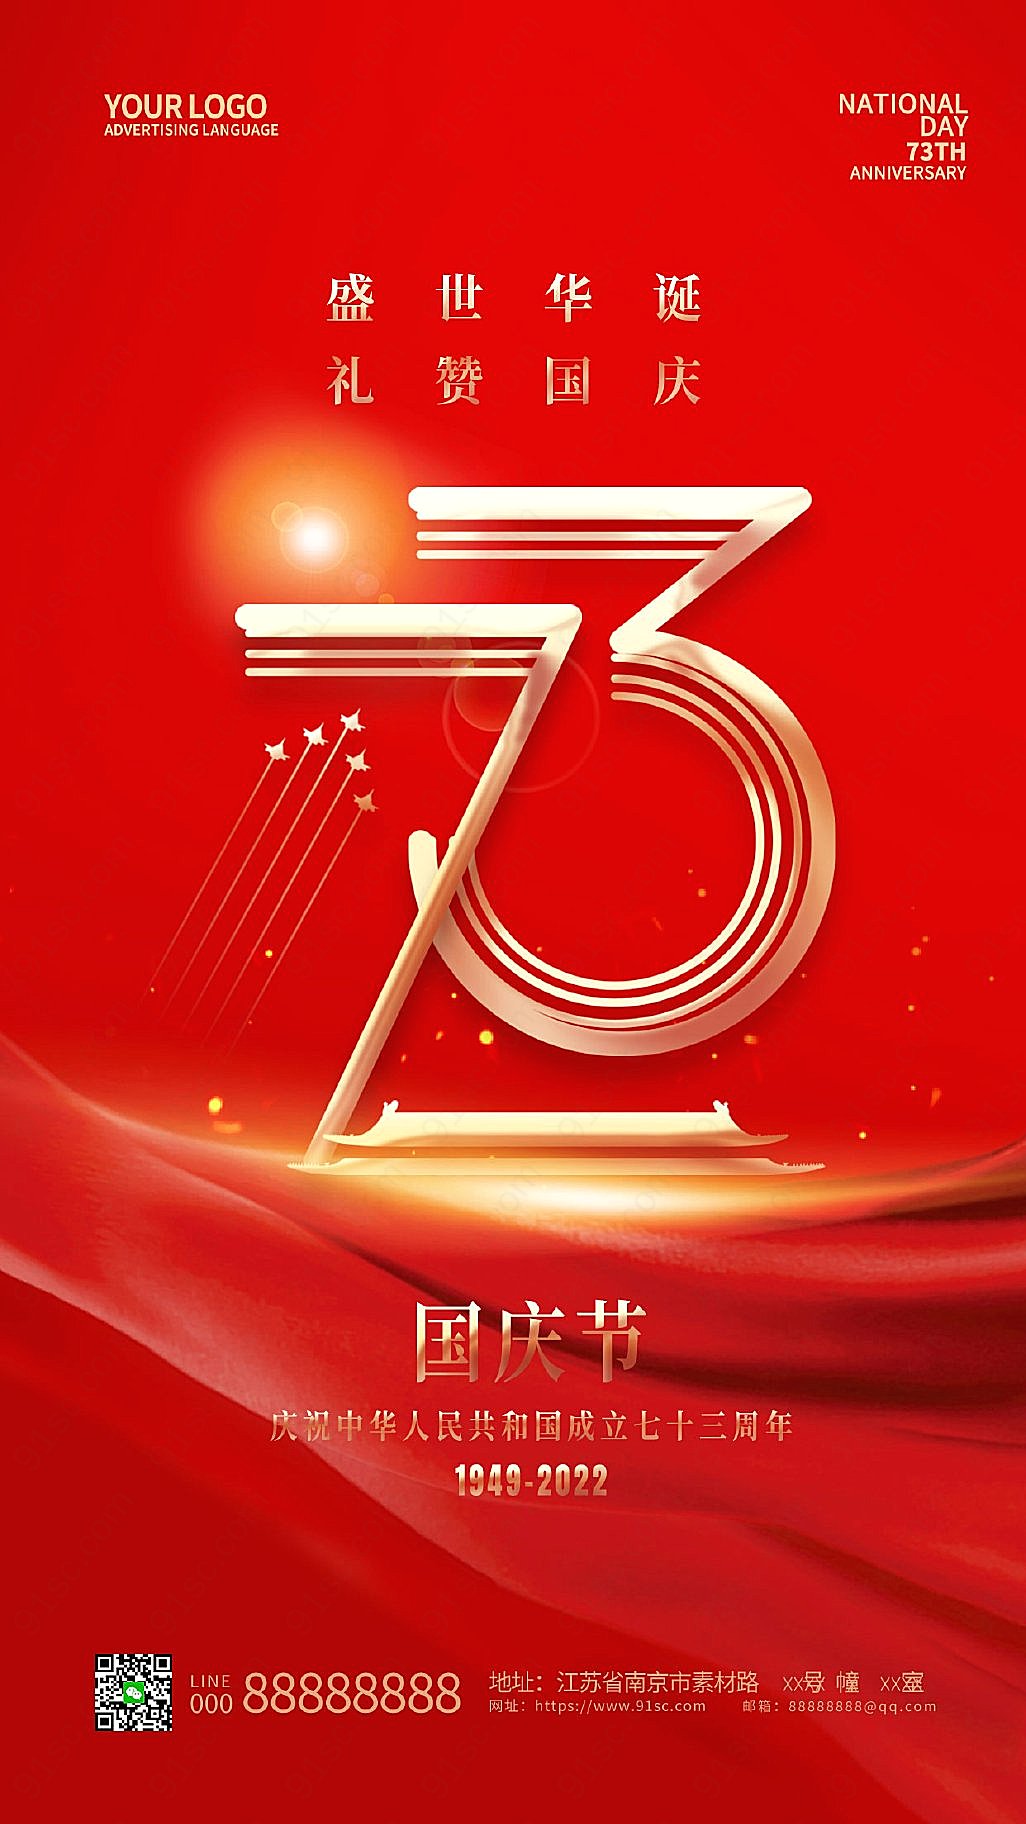 国庆节手机宣传海报红色简约风格欢庆国庆佳节新媒体用图下载